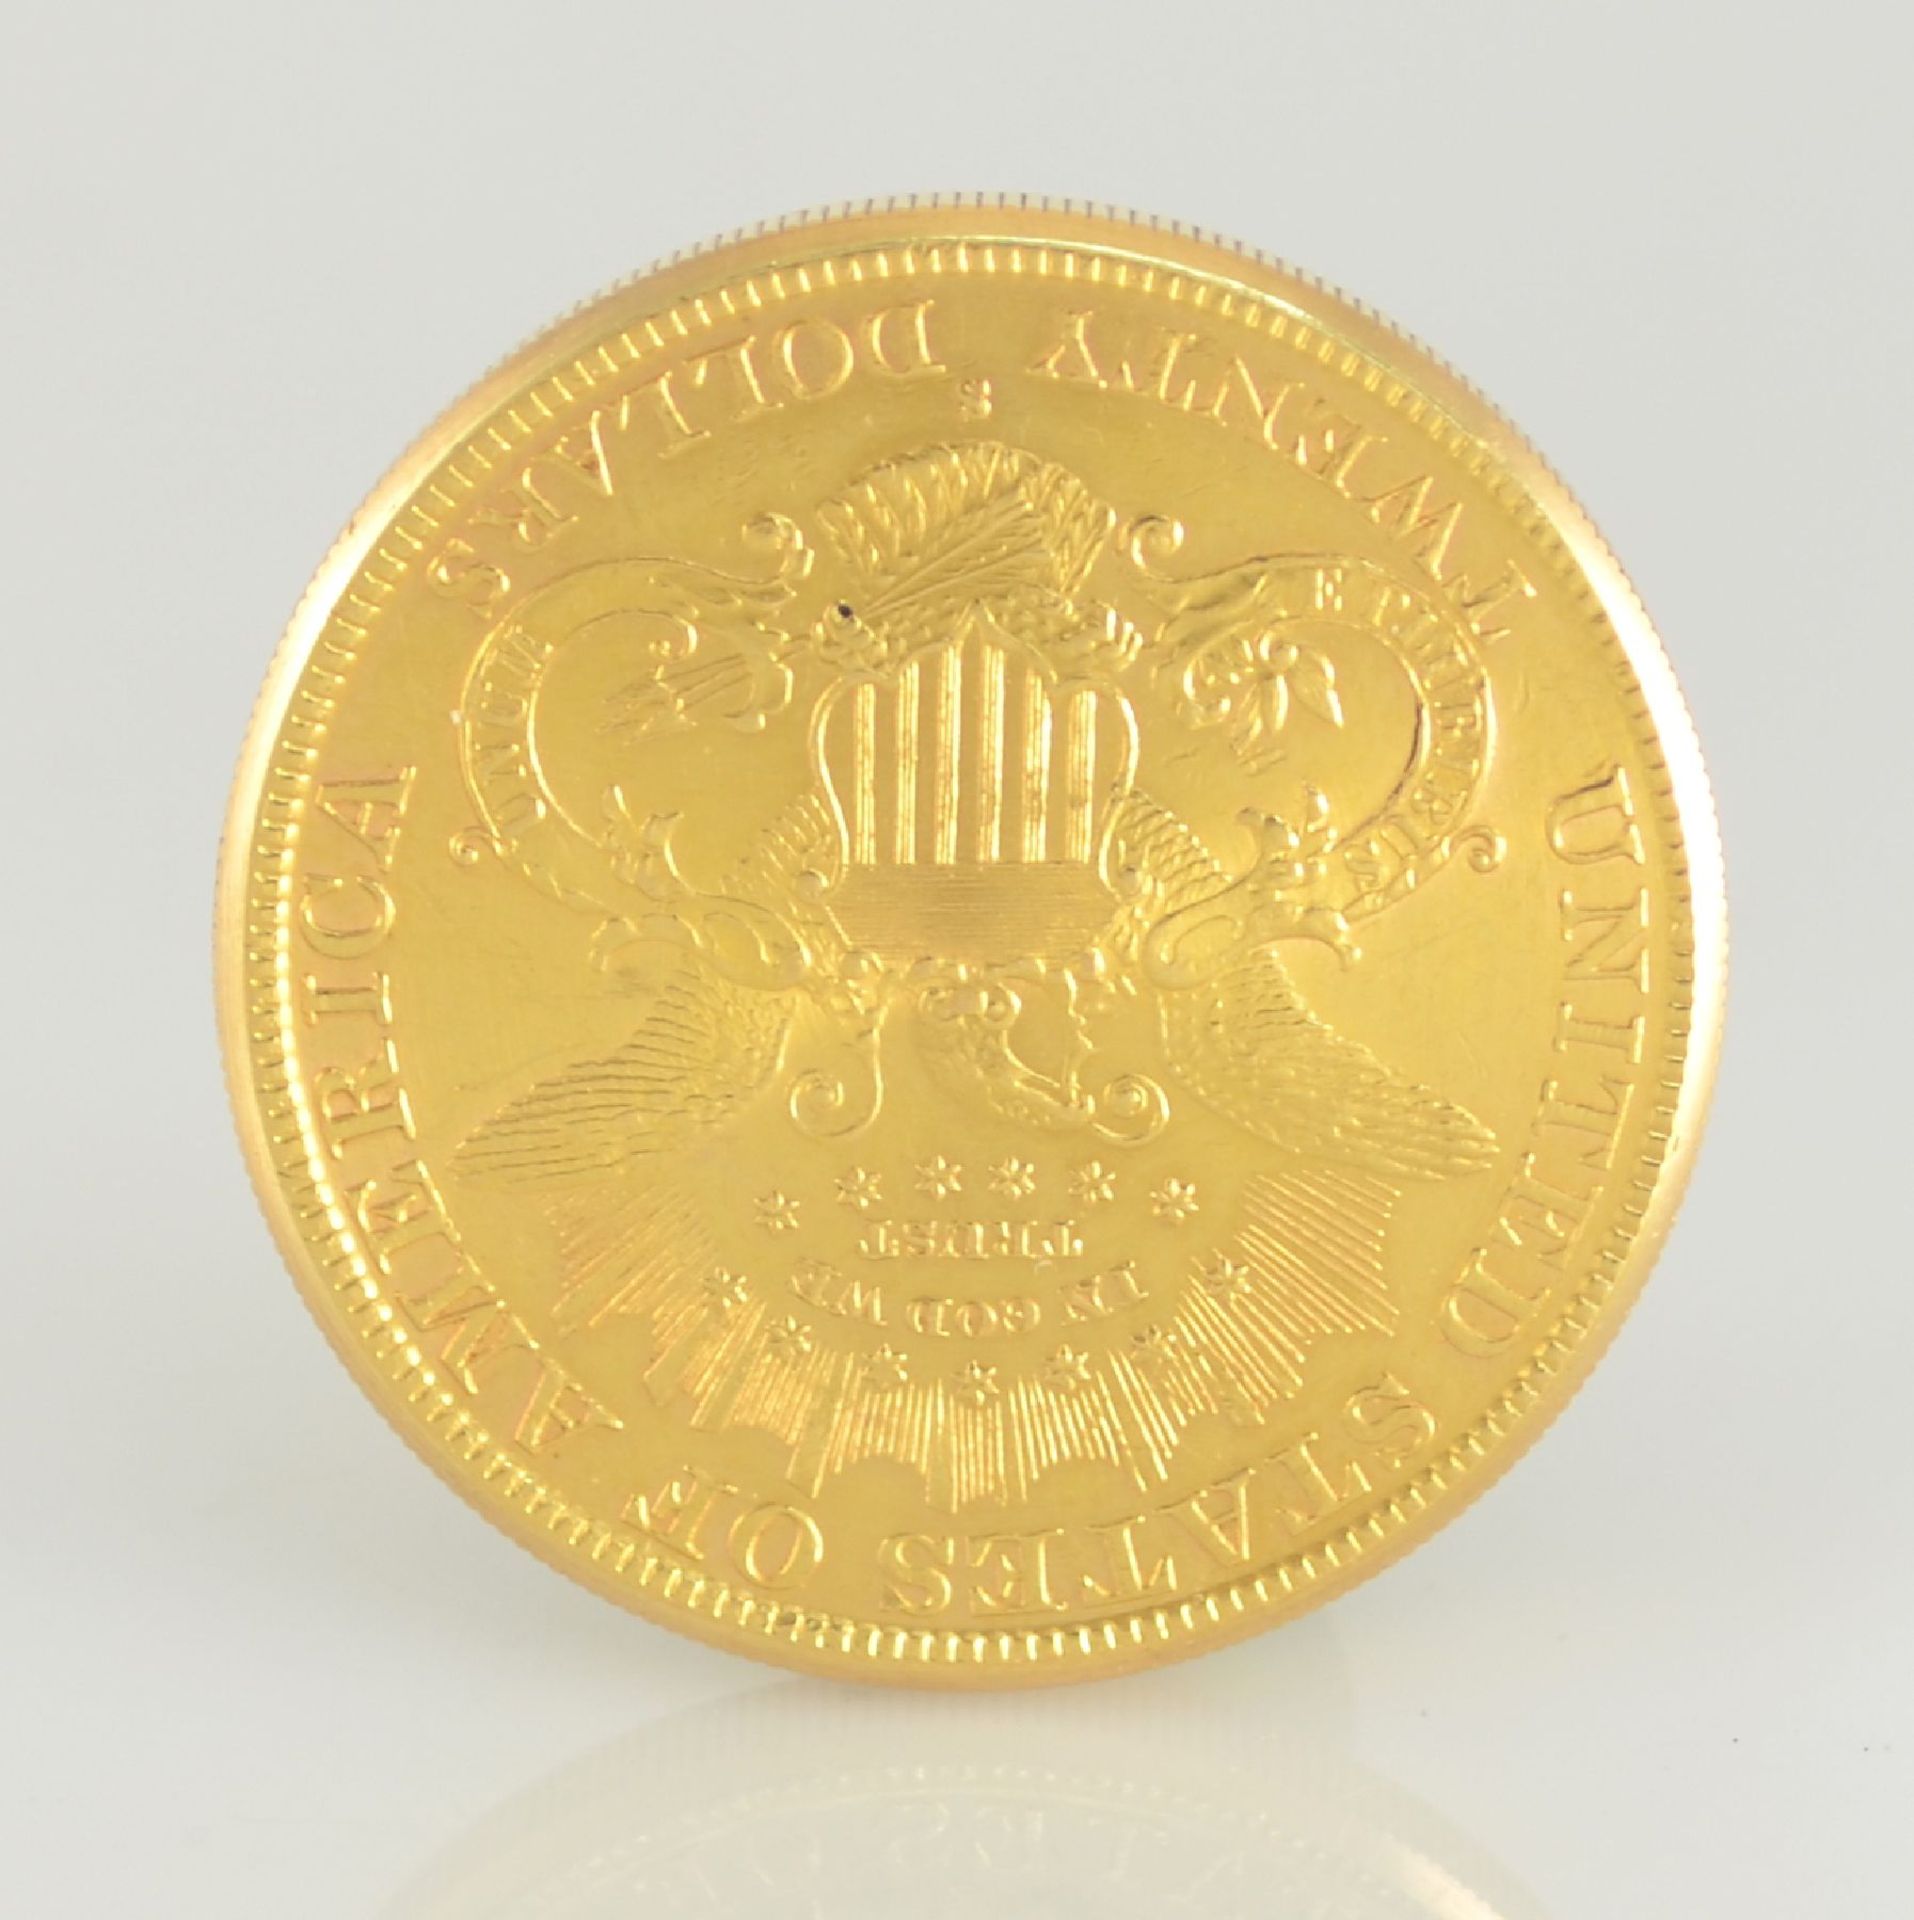 MERSMANN Münzuhr in Form einer 20 US-Dollar- Münze, Sprungdeckel öffnet durch versteckten Drücker - Bild 5 aus 9